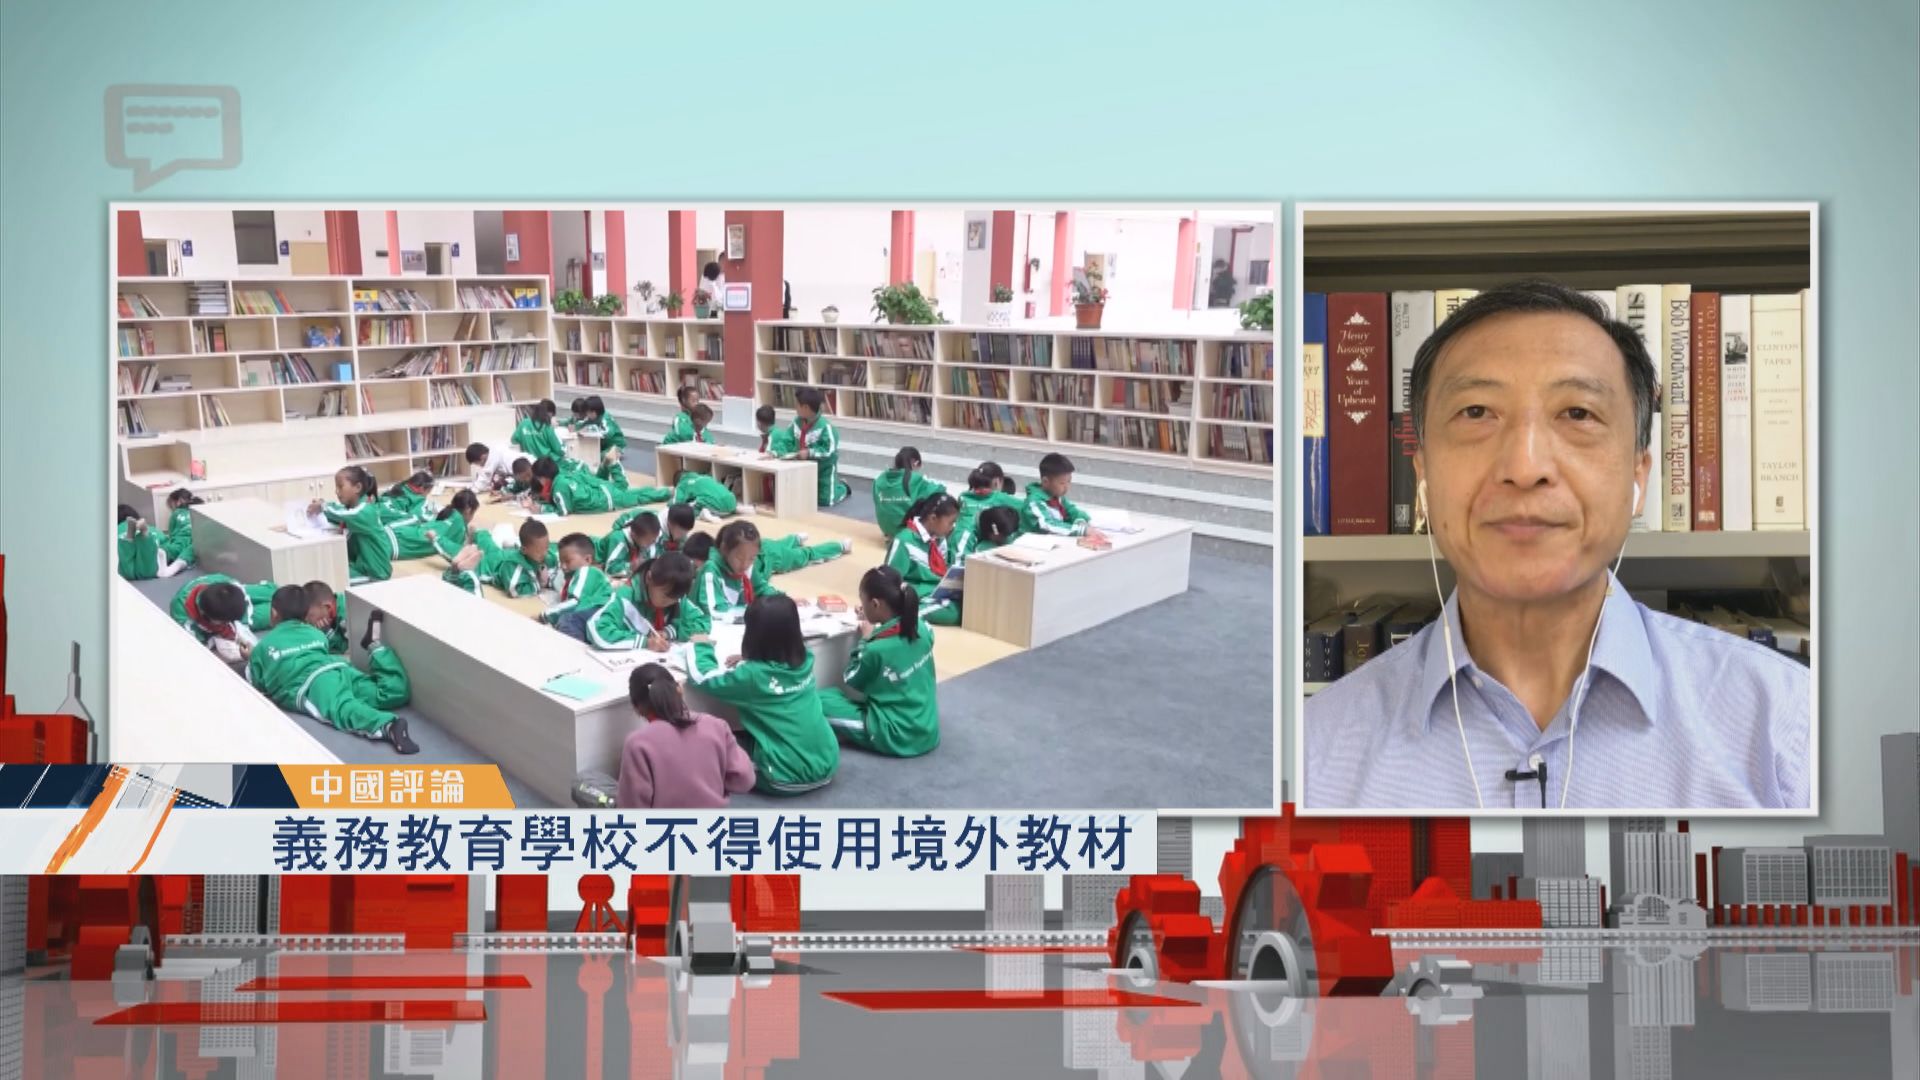 【中國評論】內地整頓教育措施不斷推出